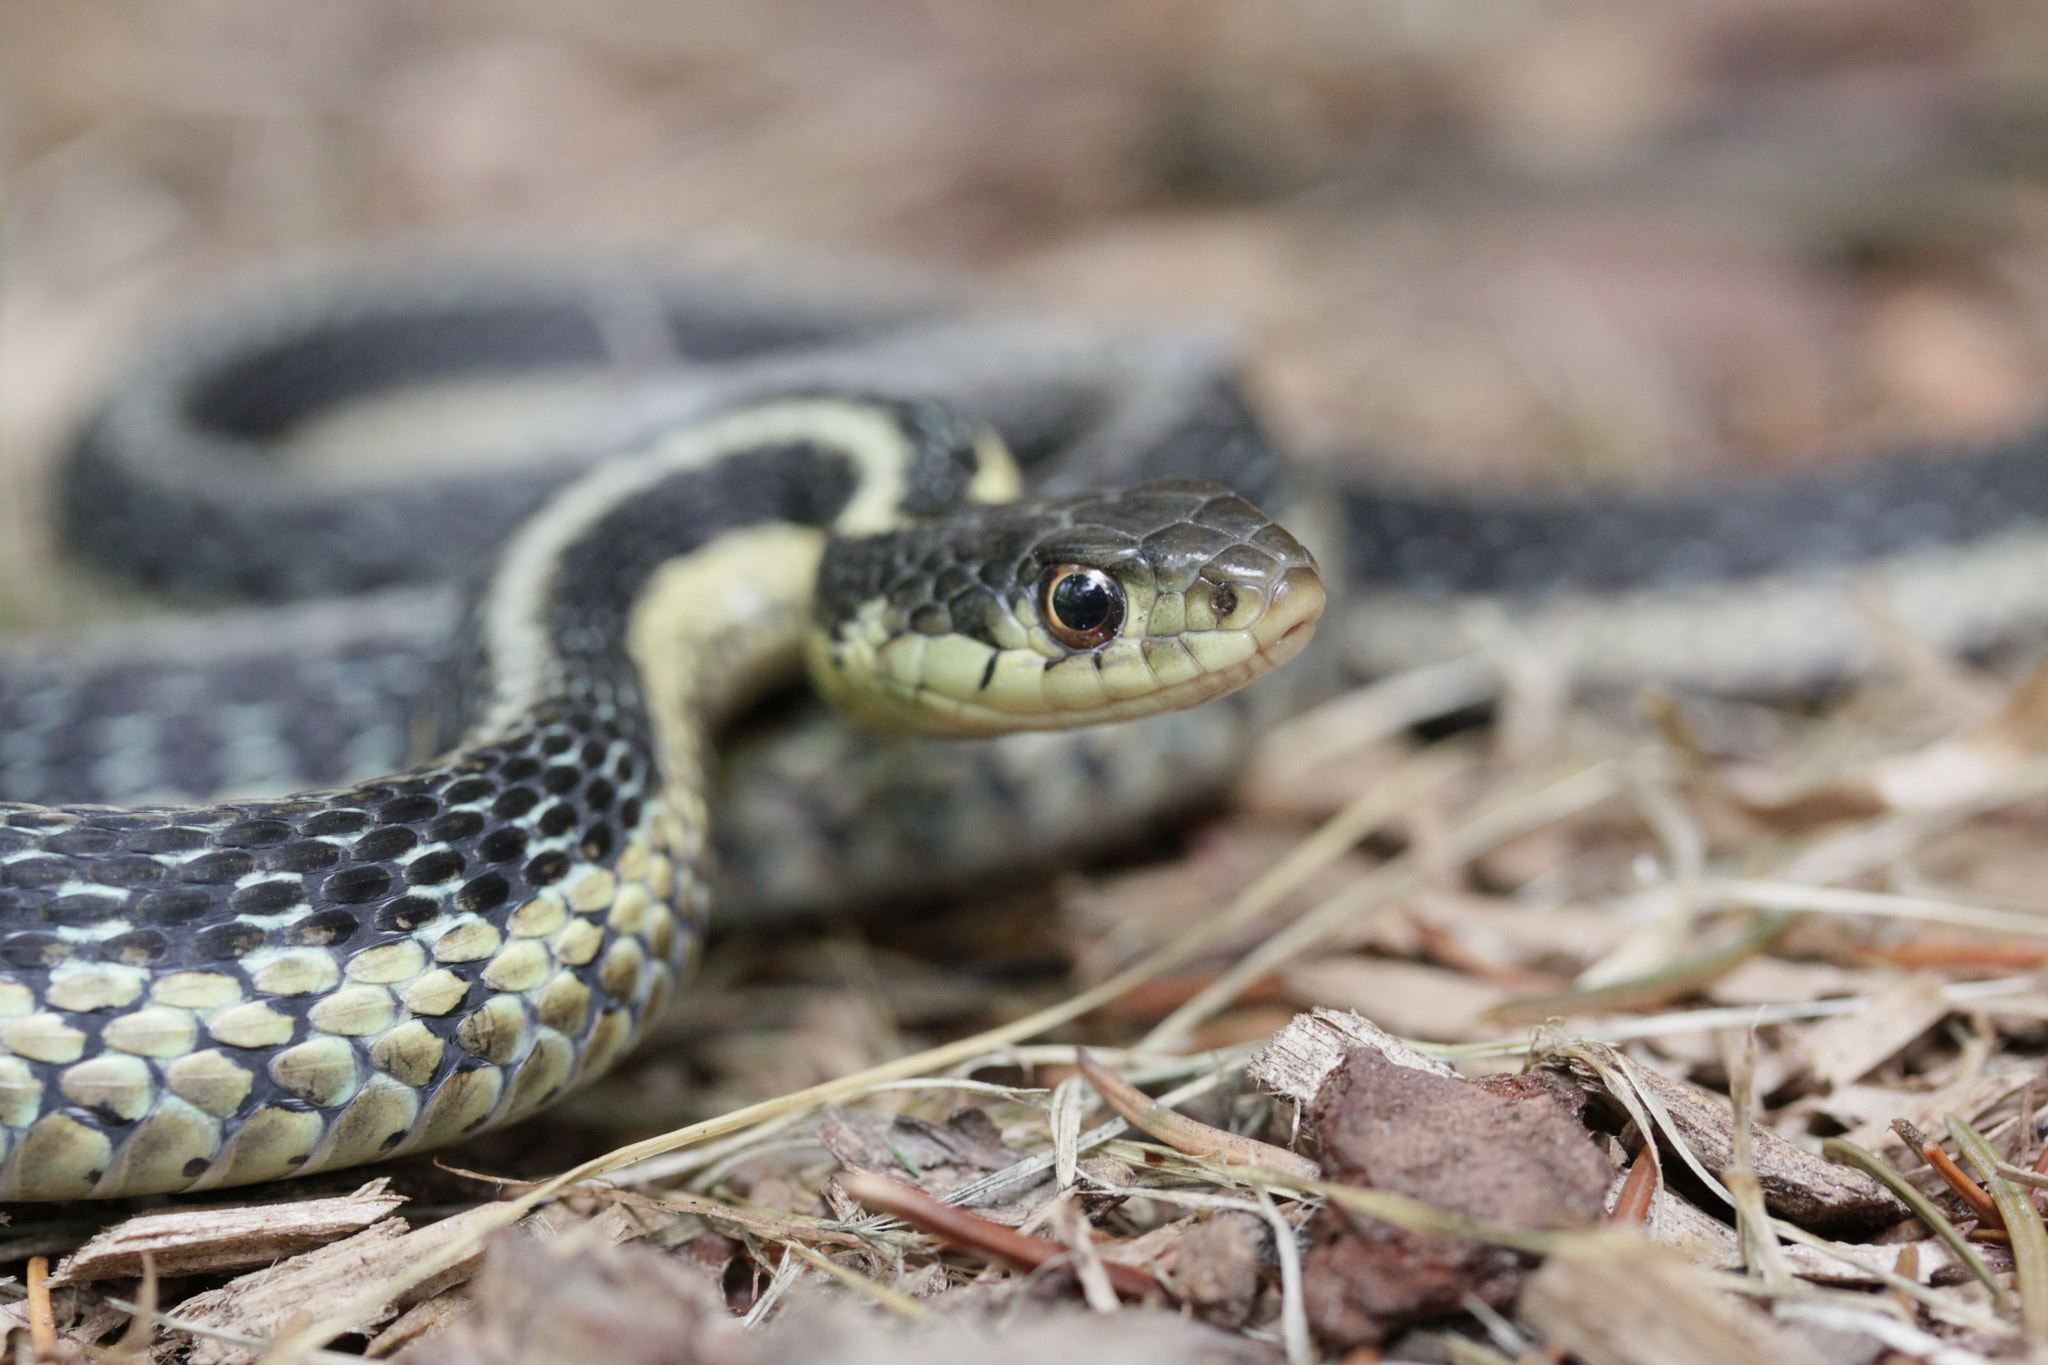 Canon EOS 50D sample photo. Common garter snake photography